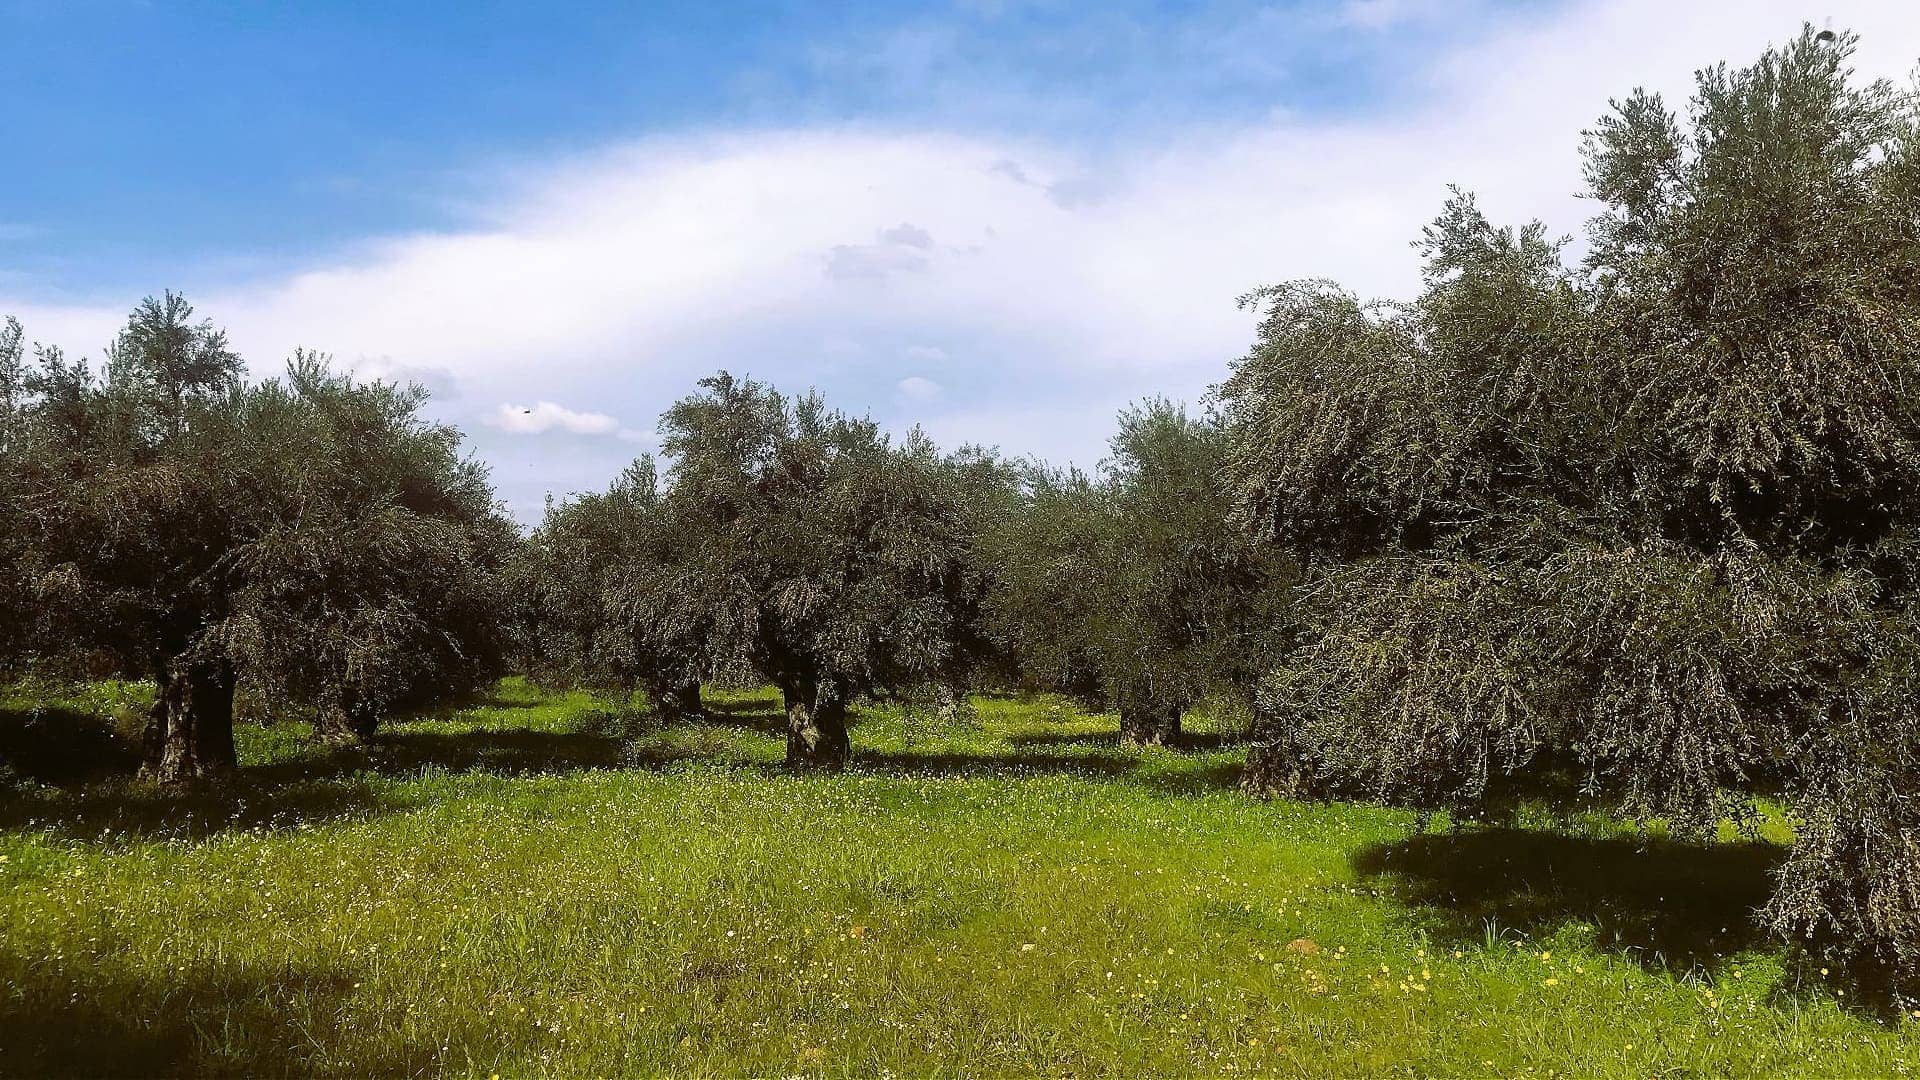 europa-perfiles-la-mejor-producción-de-aceites-de-oliva-premiado-productor-griego-mira-este-olive-oil-times